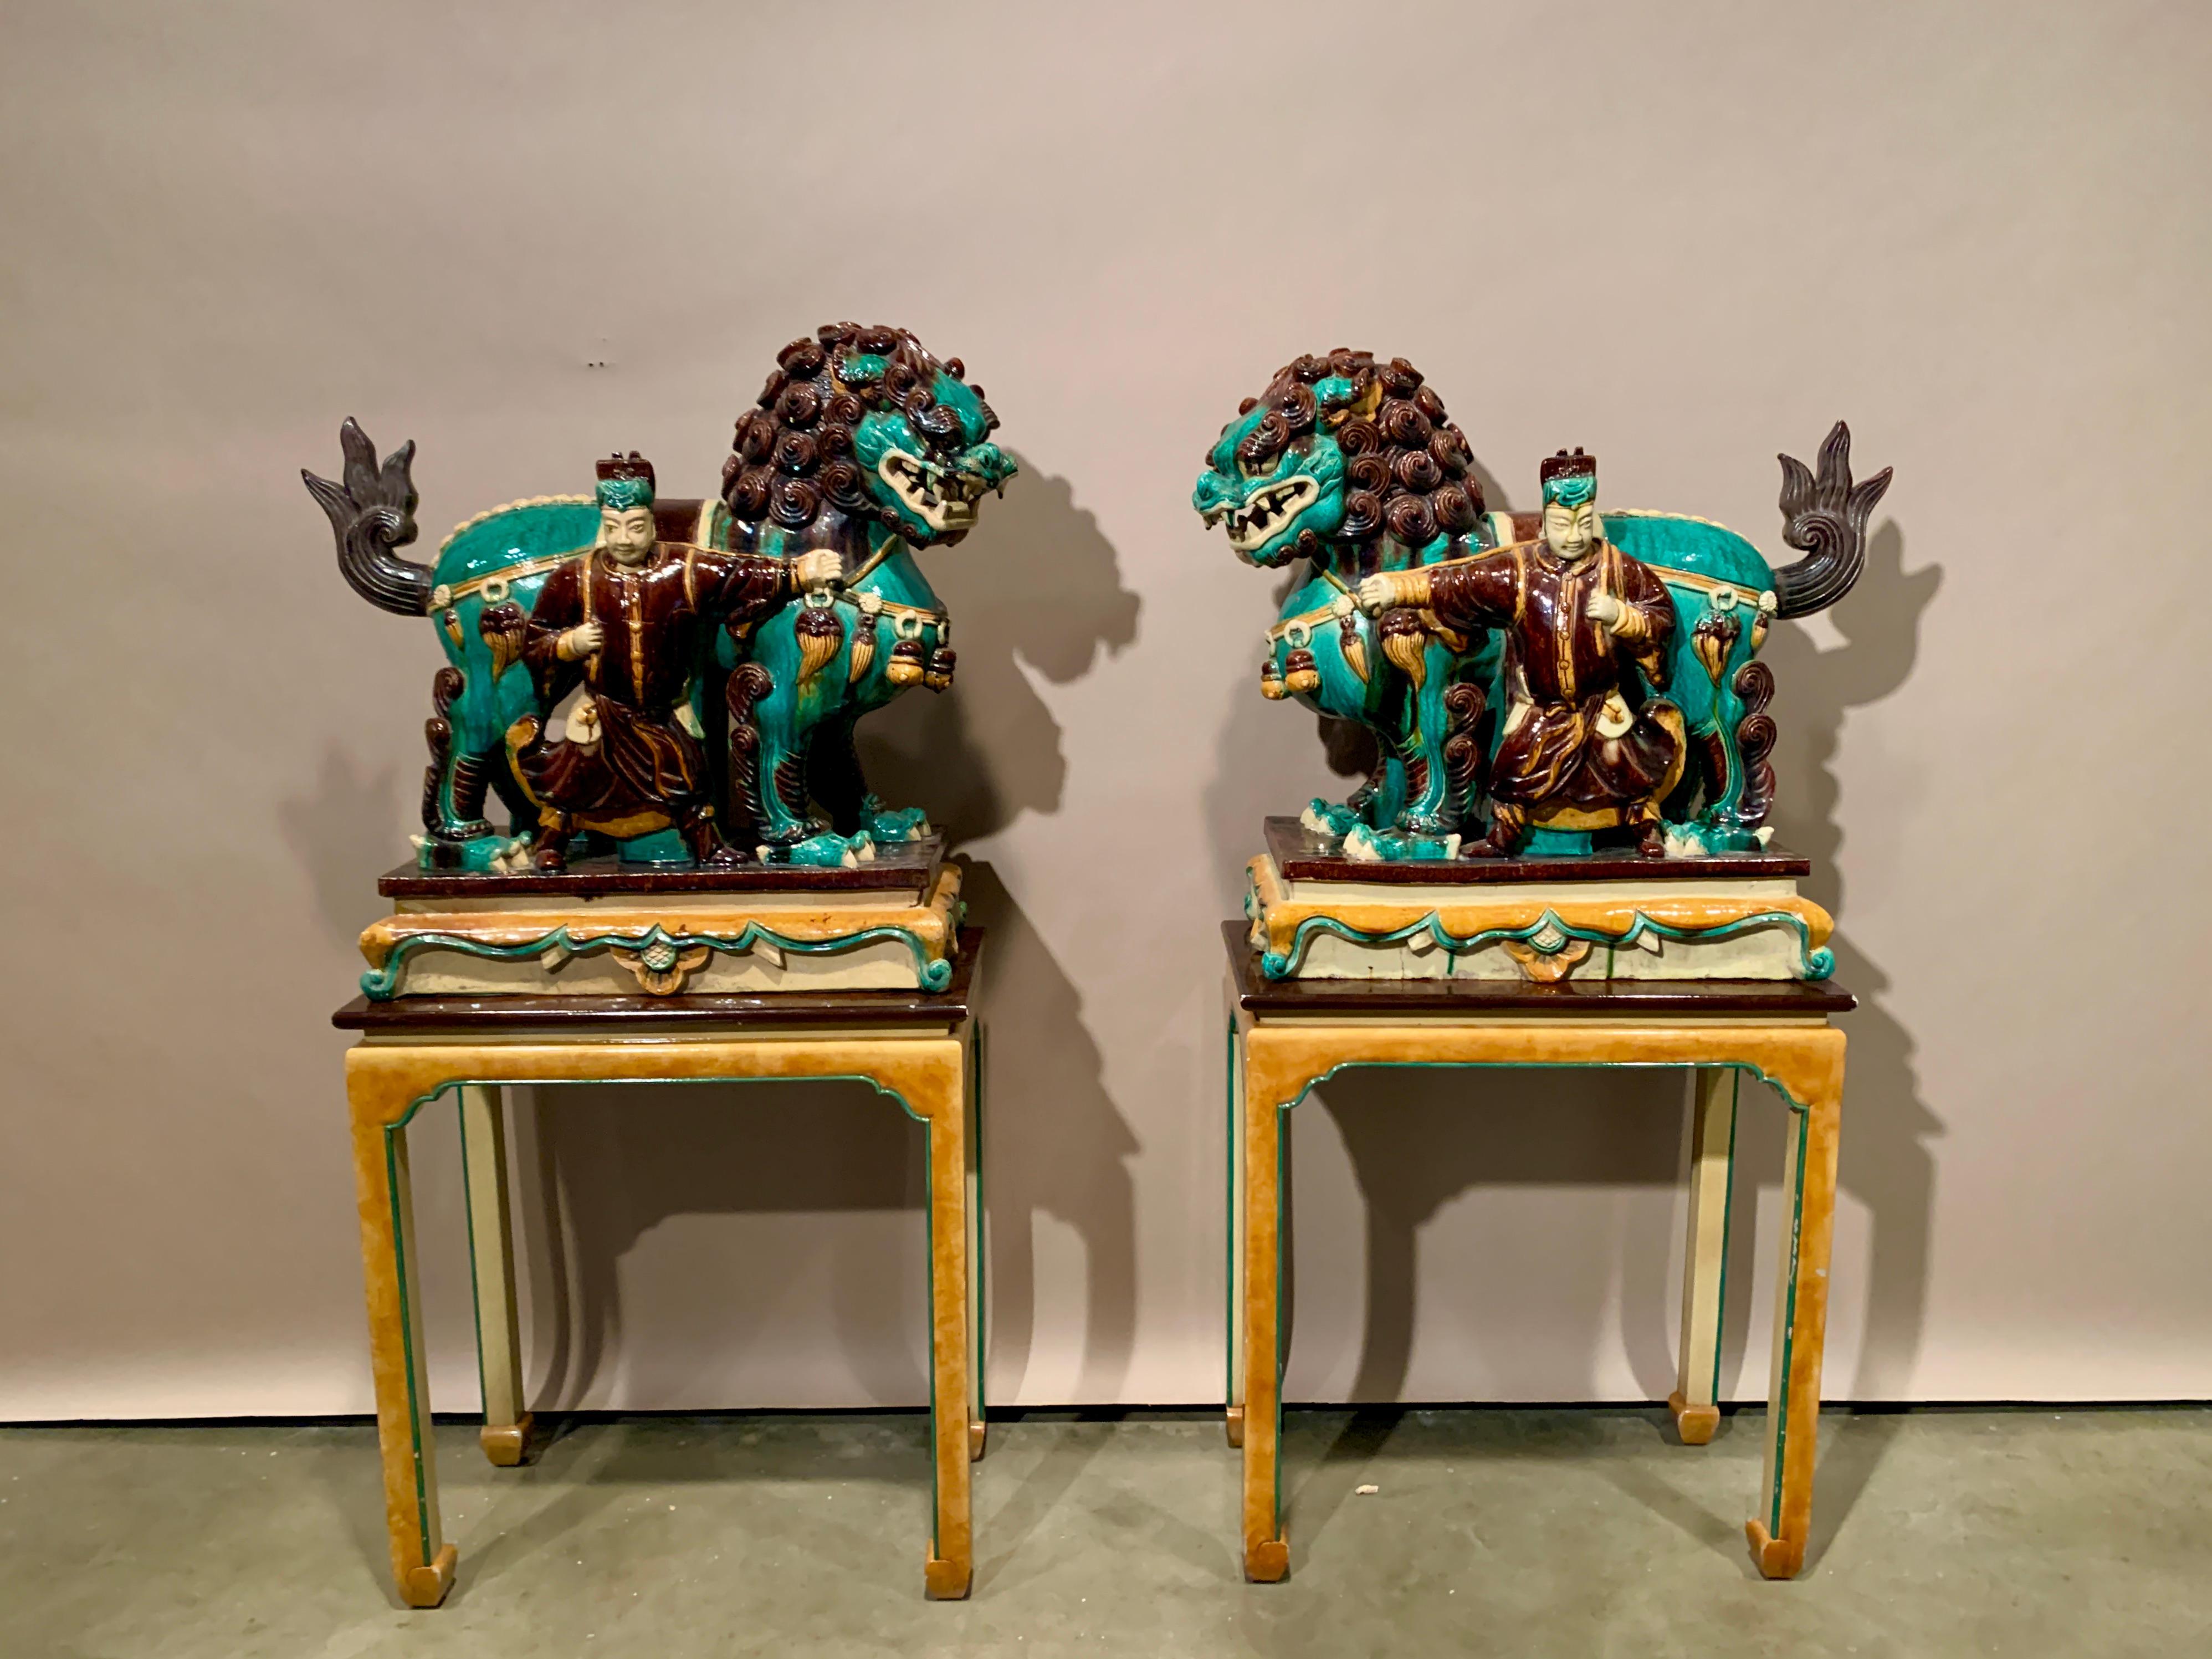 Ein fantastisches Paar großer chinesischer Sancai-Fliesen, glasiert, buddhistische Löwen und Diener, späte Ming-Dynastie, erste Hälfte des 17. Jahrhunderts, Shanxi, China. Präsentiert auf maßgefertigten Tischständern aus Holz und Lack des 20.